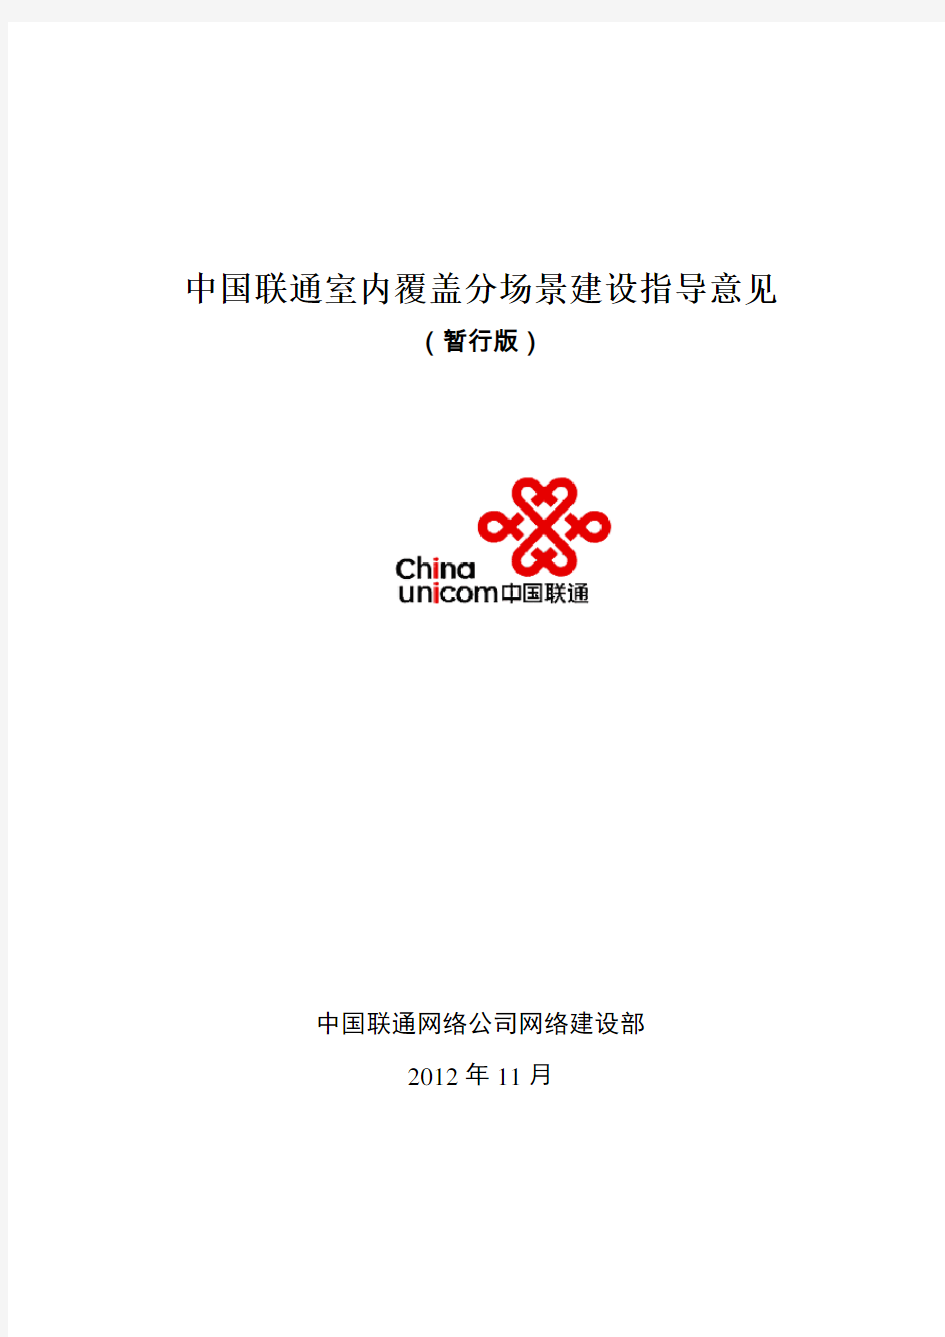 中国联通室内覆盖分场景建设指导意见(暂行版)20130109